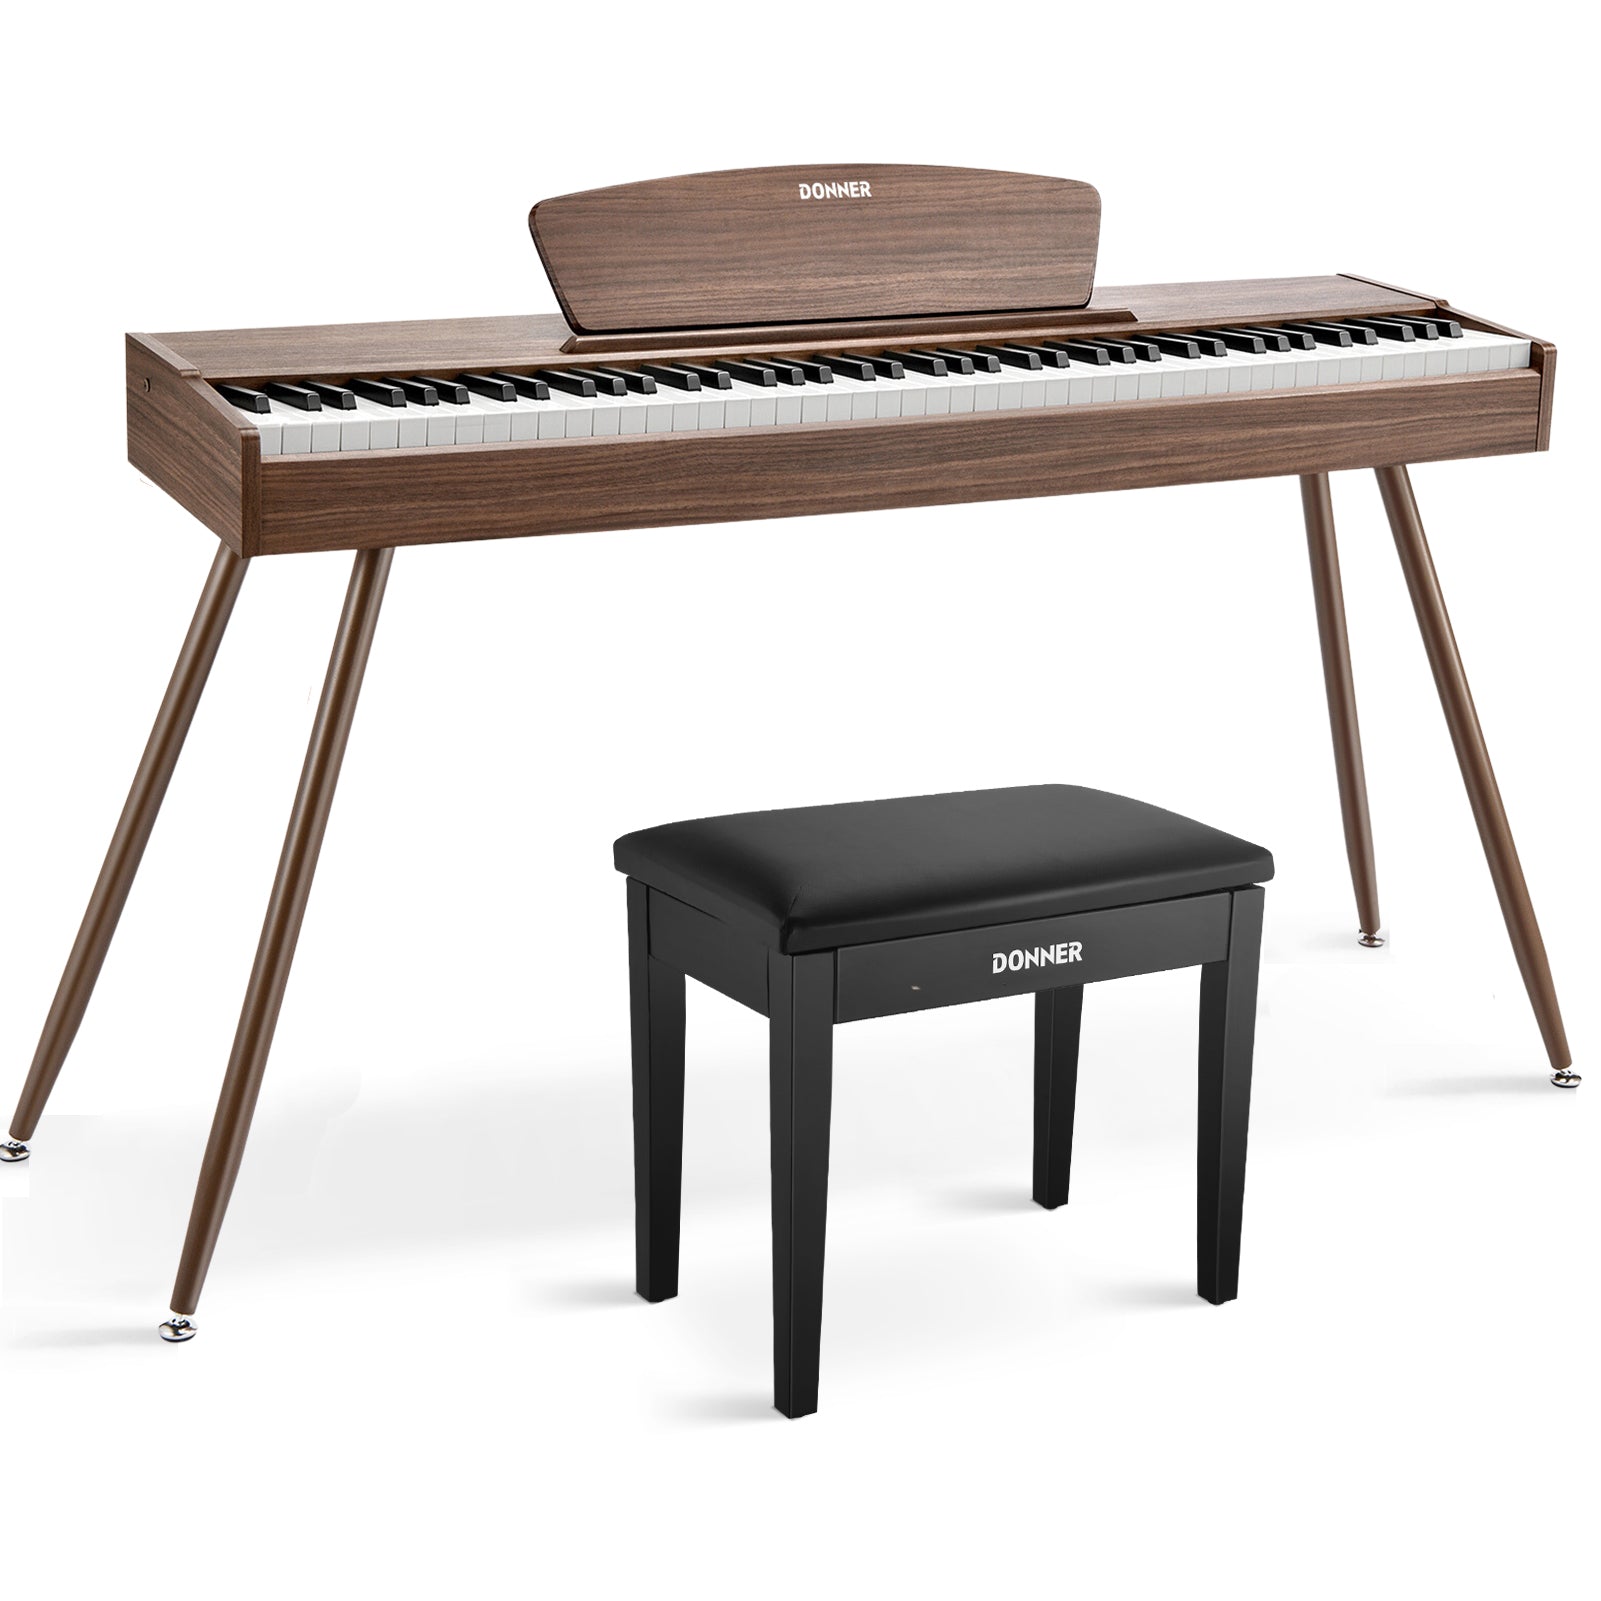 Donner DDP-80 Digital-Piano für Zuhause 88 gewichtete Tasten & Stilvolles Holzdesign mit 3 Pedale - Walnut / Piano + Schwarz Klavierbank von Donner